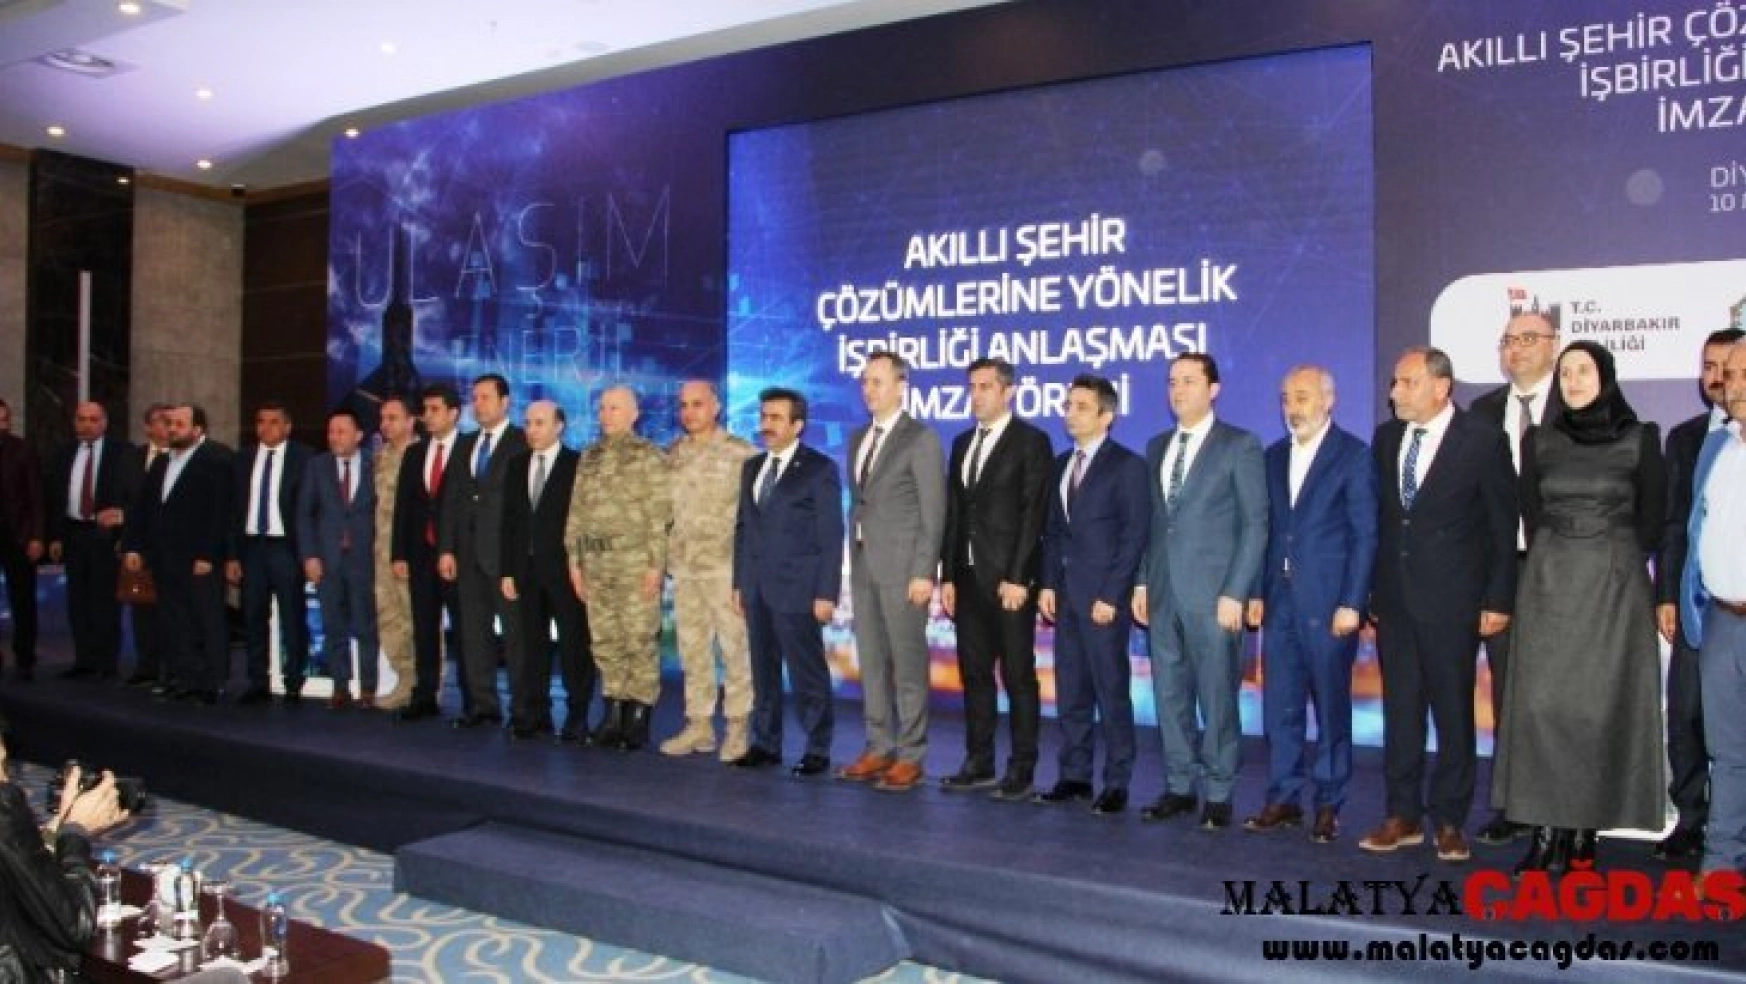 Diyarbakır'da 'akıllı şehir çözümlerine yönelik iş birliği anlaşması' imzalandı